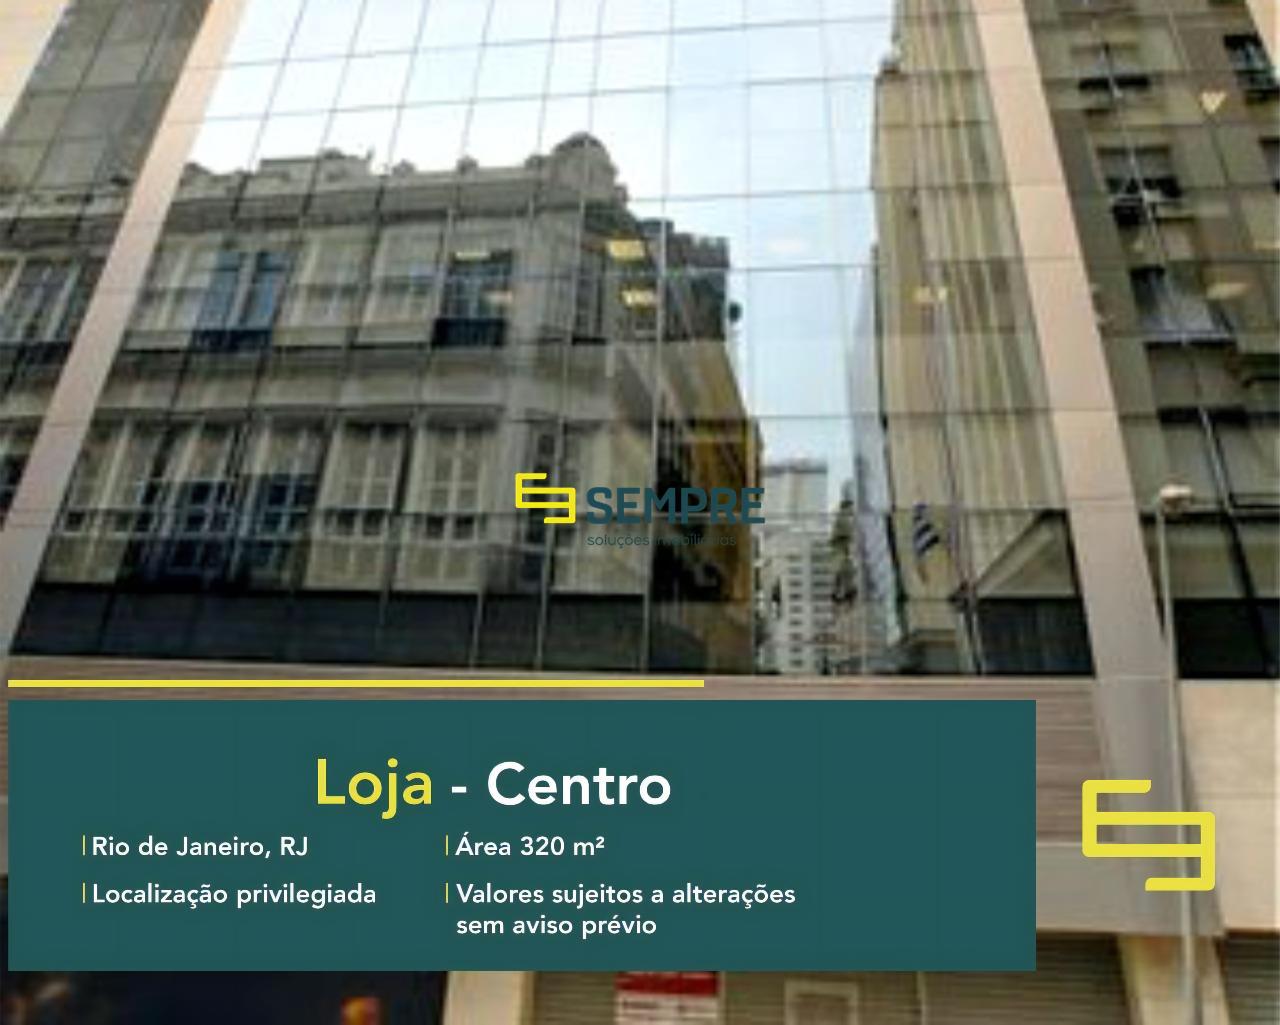 Andar comercial no Rio de Janeiro para alugar - Centro, em excelente localização. O estabelecimento comercial conta com área de 320 m².